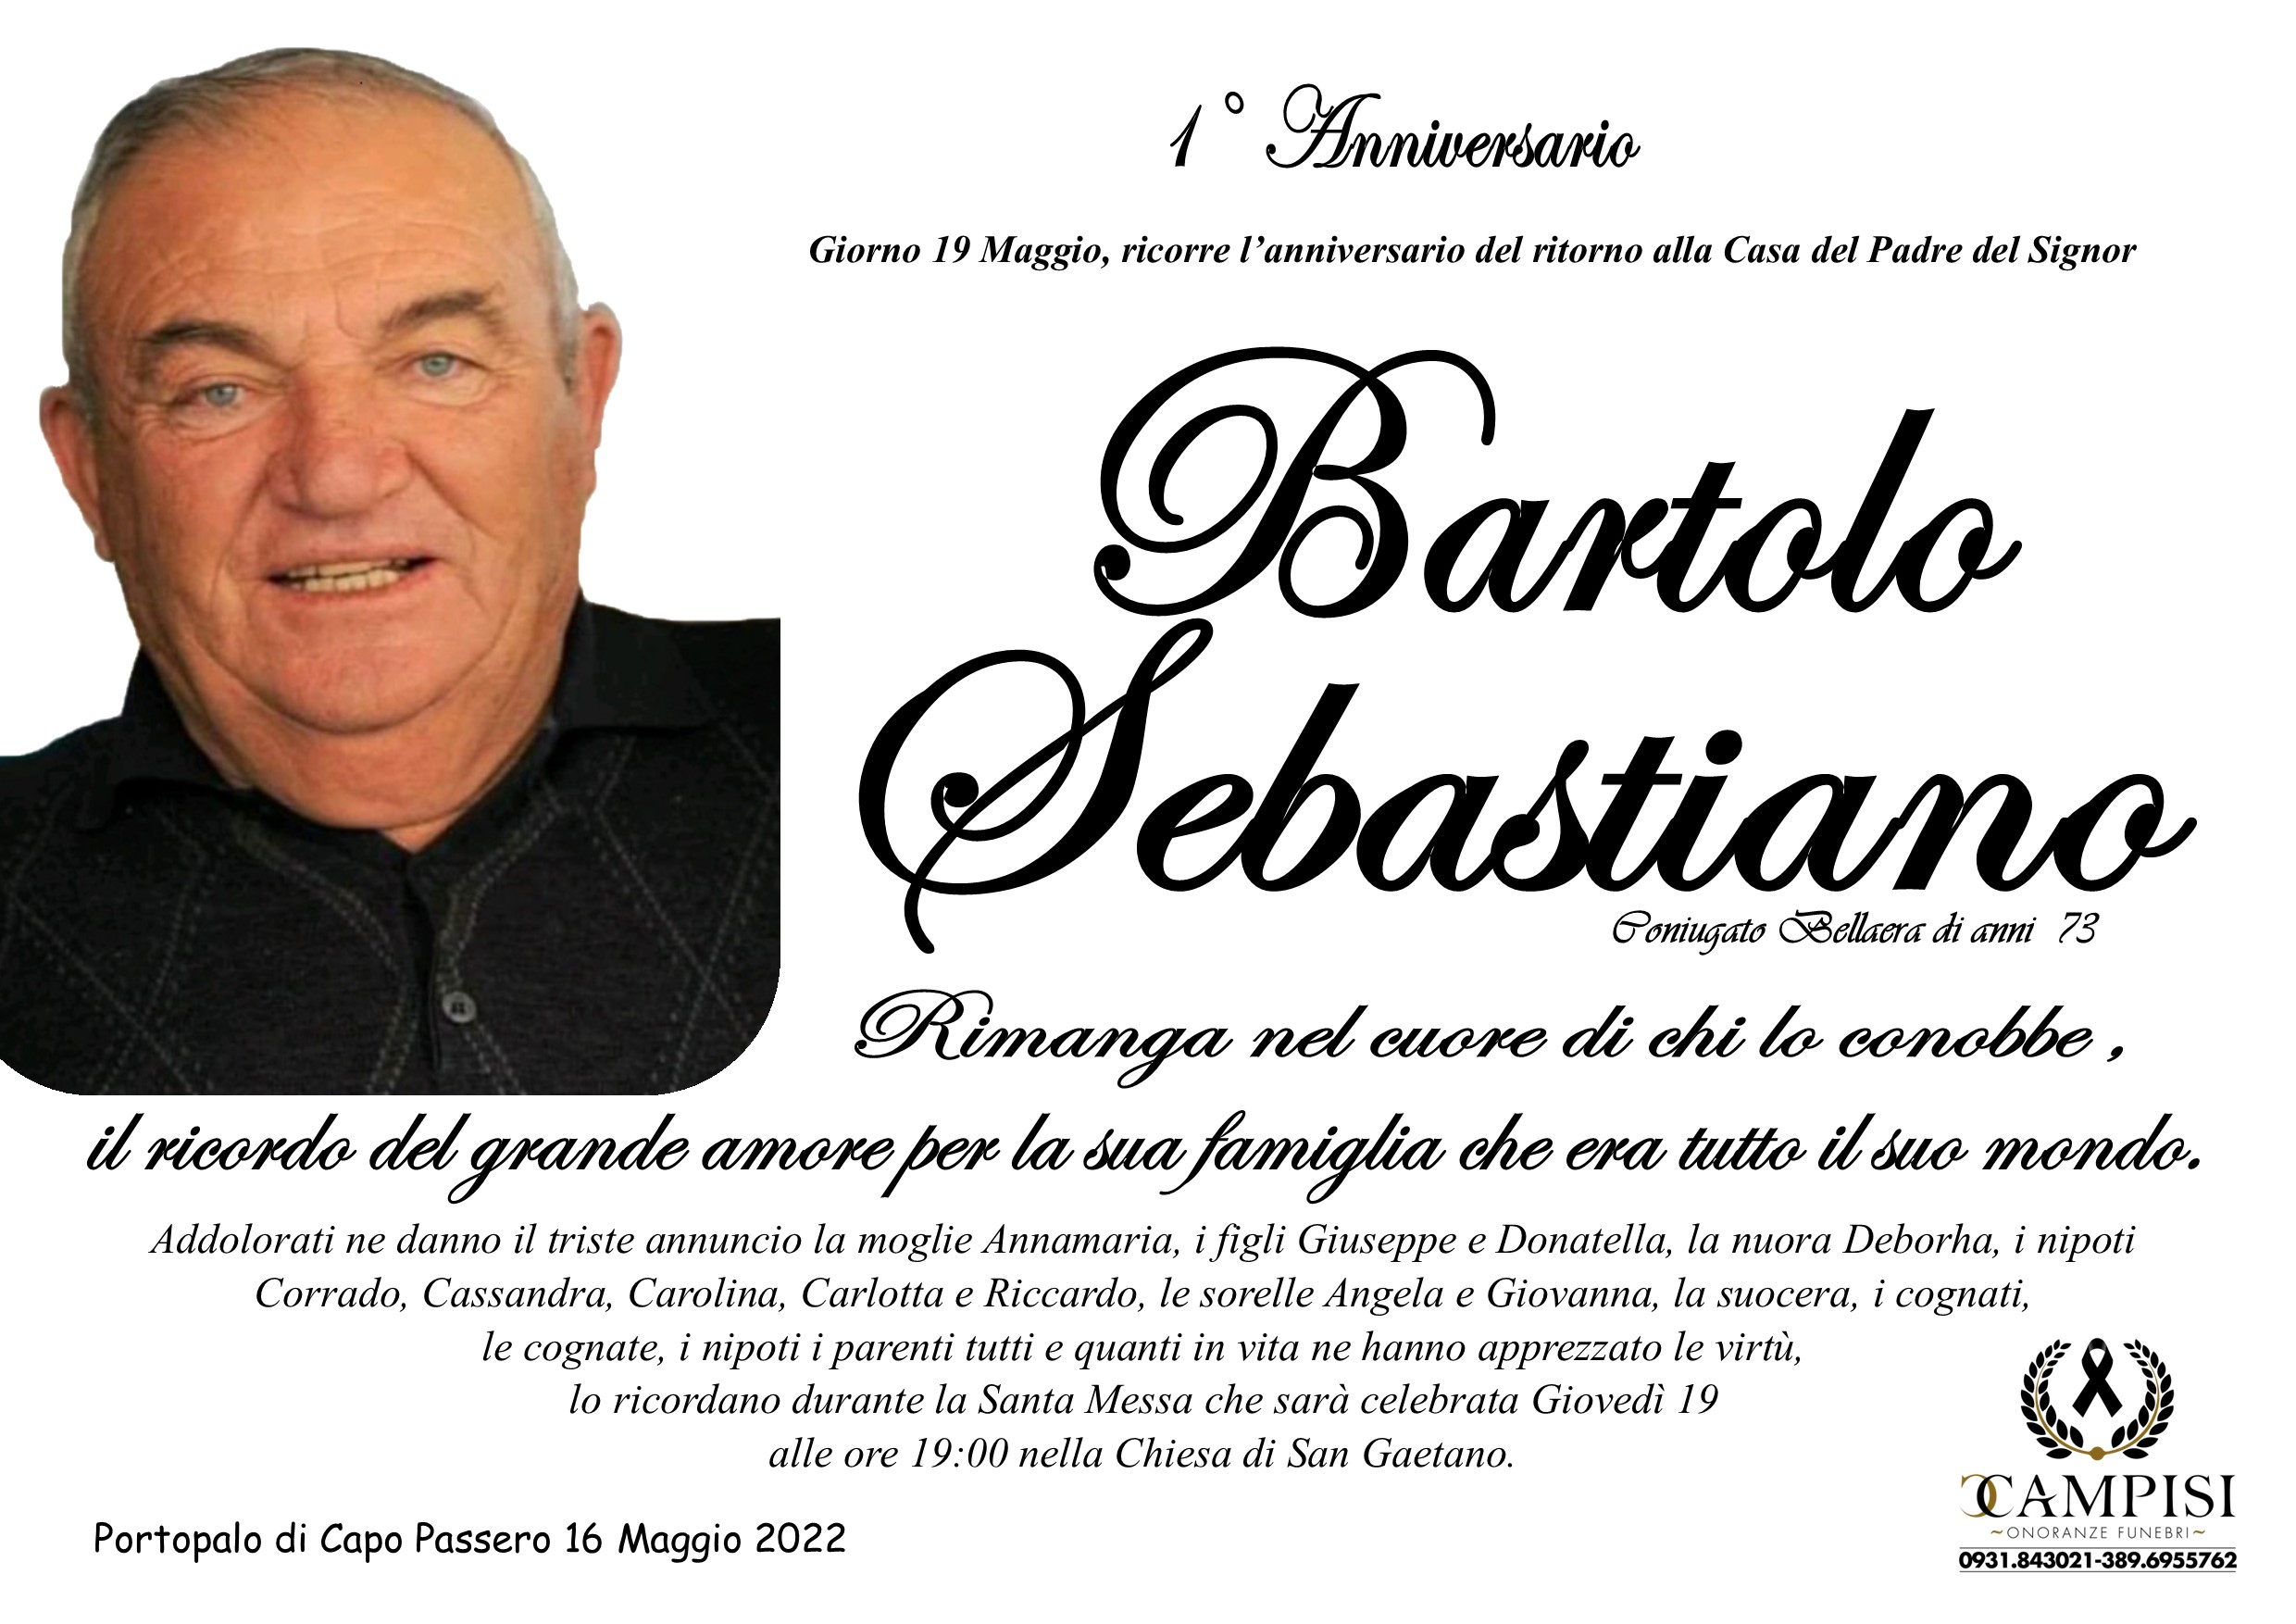 Bartolo Sebastiano